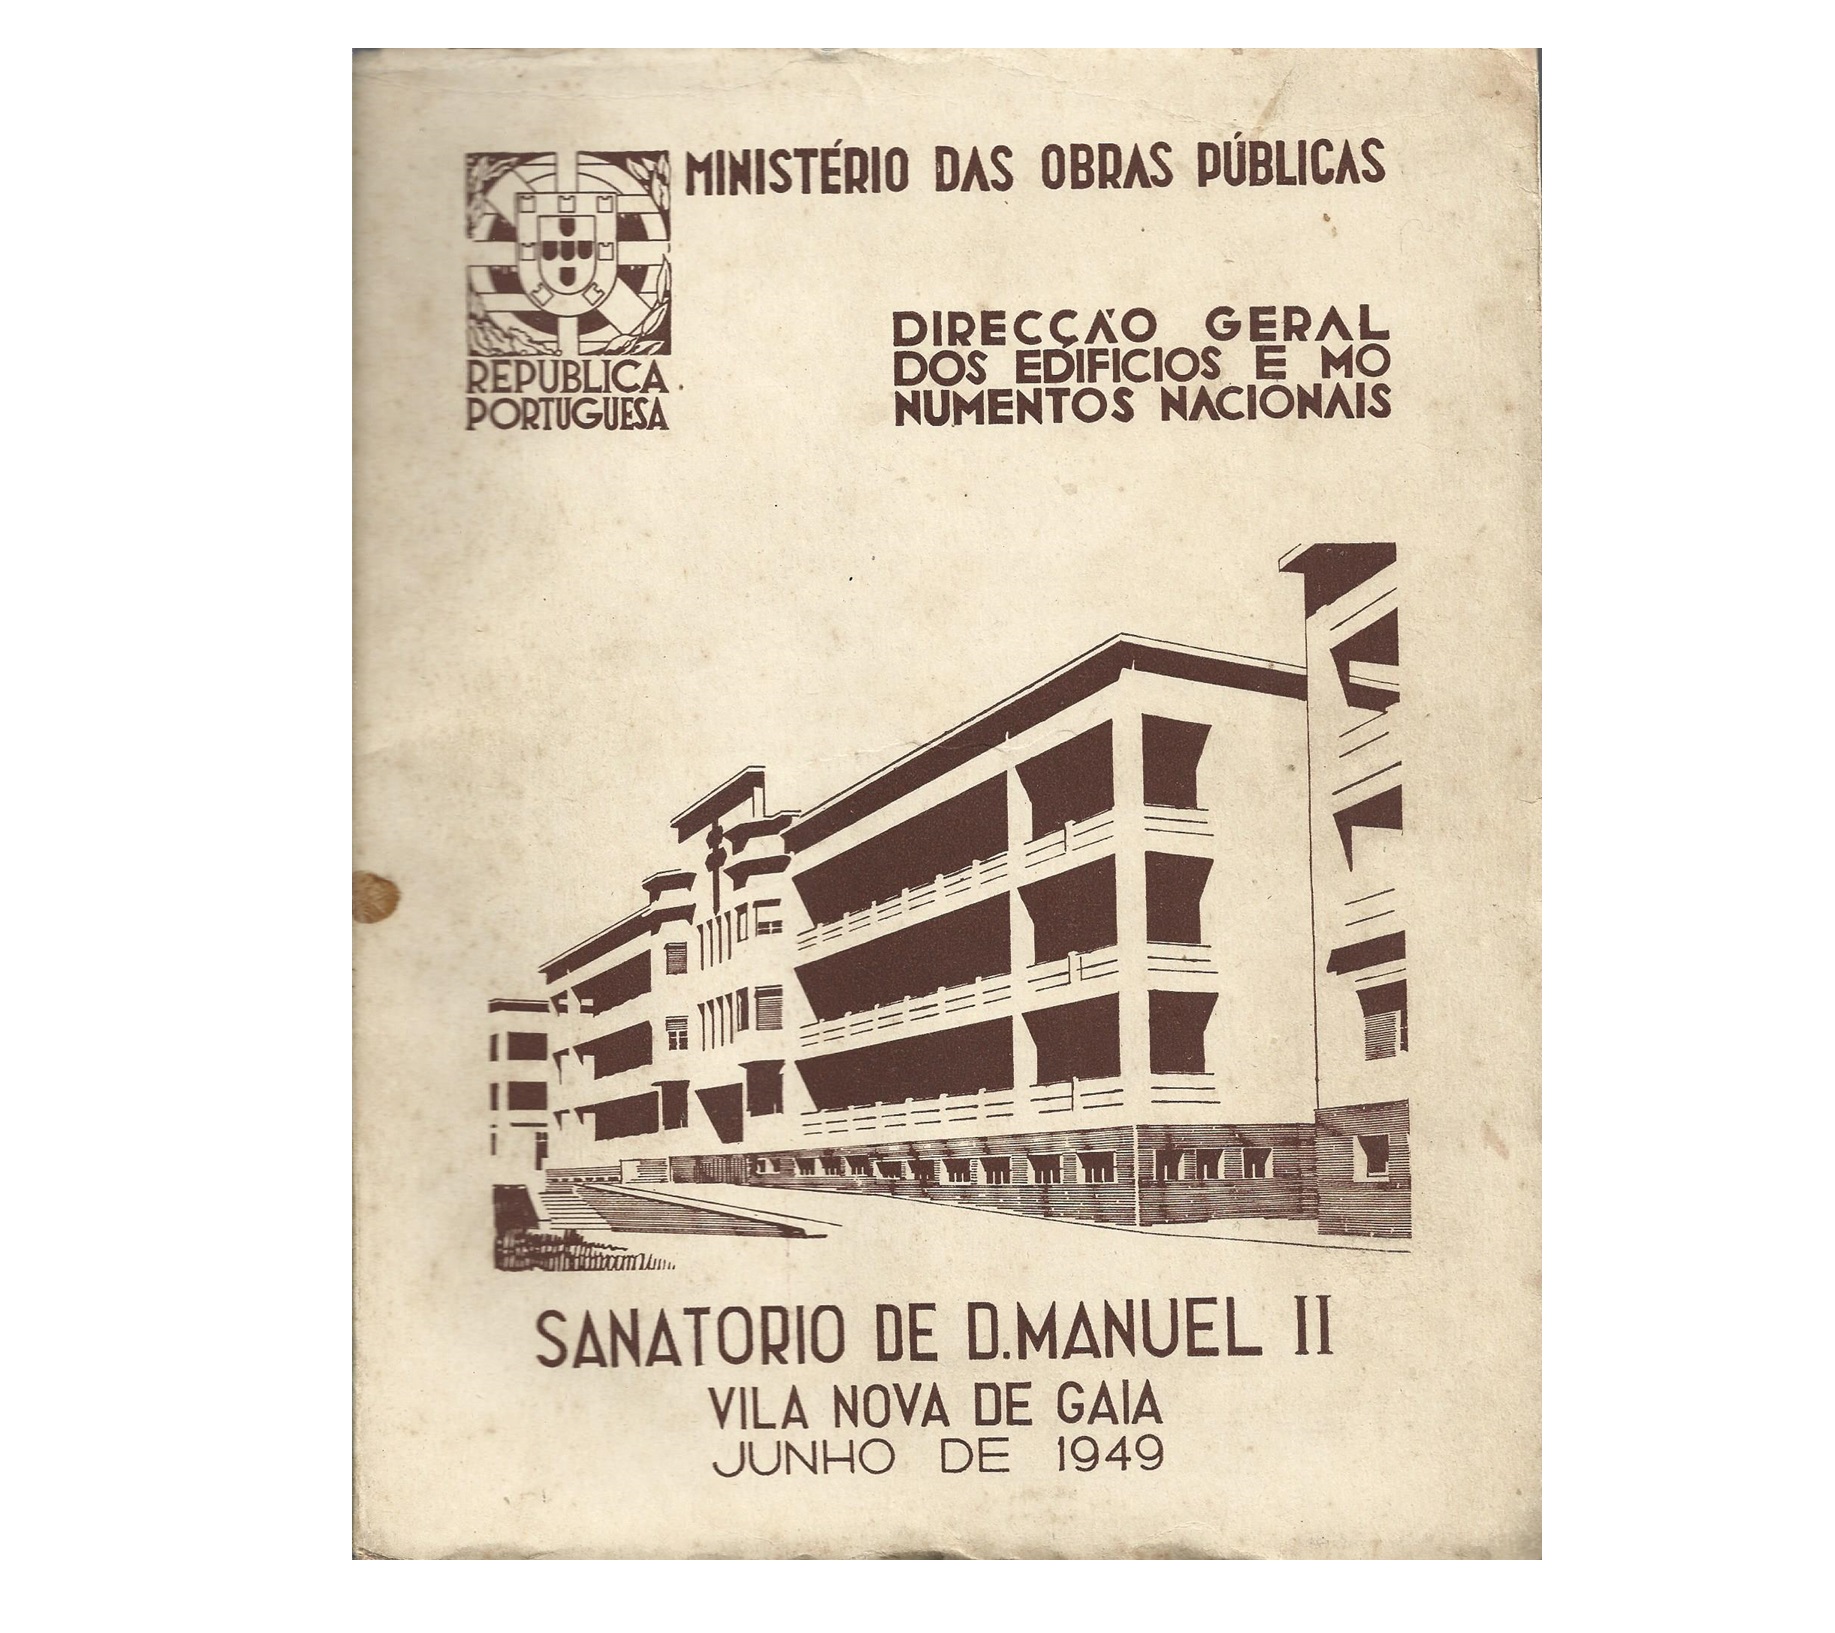 SANATÓRIO DE D. MANUEL II